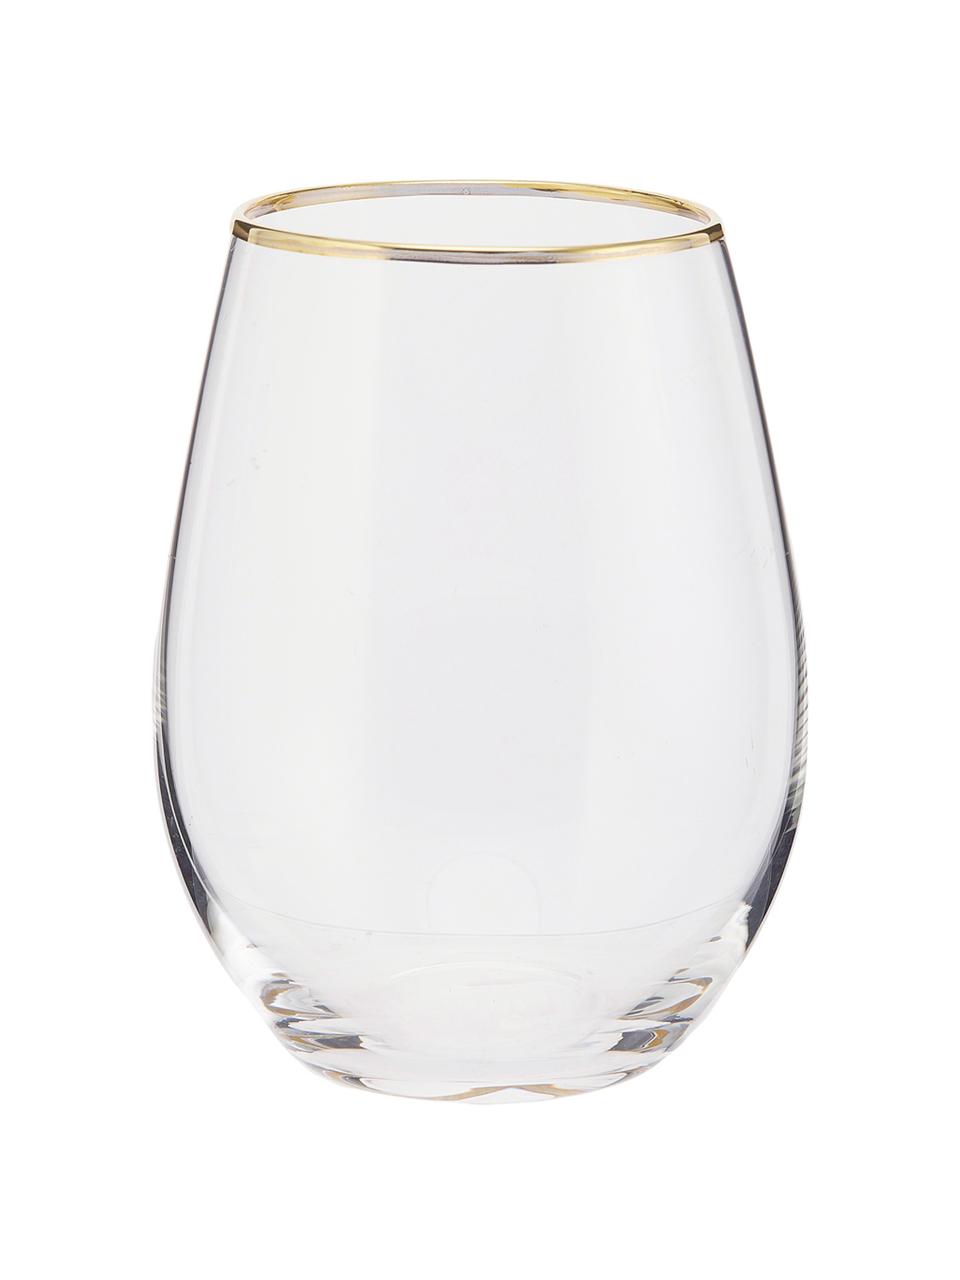 Bicchiere acqua con bordo dorato Chloe 4 pz, Vetro, Trasparente, dorato, Ø 9 x Alt. 12 cm, 600 ml